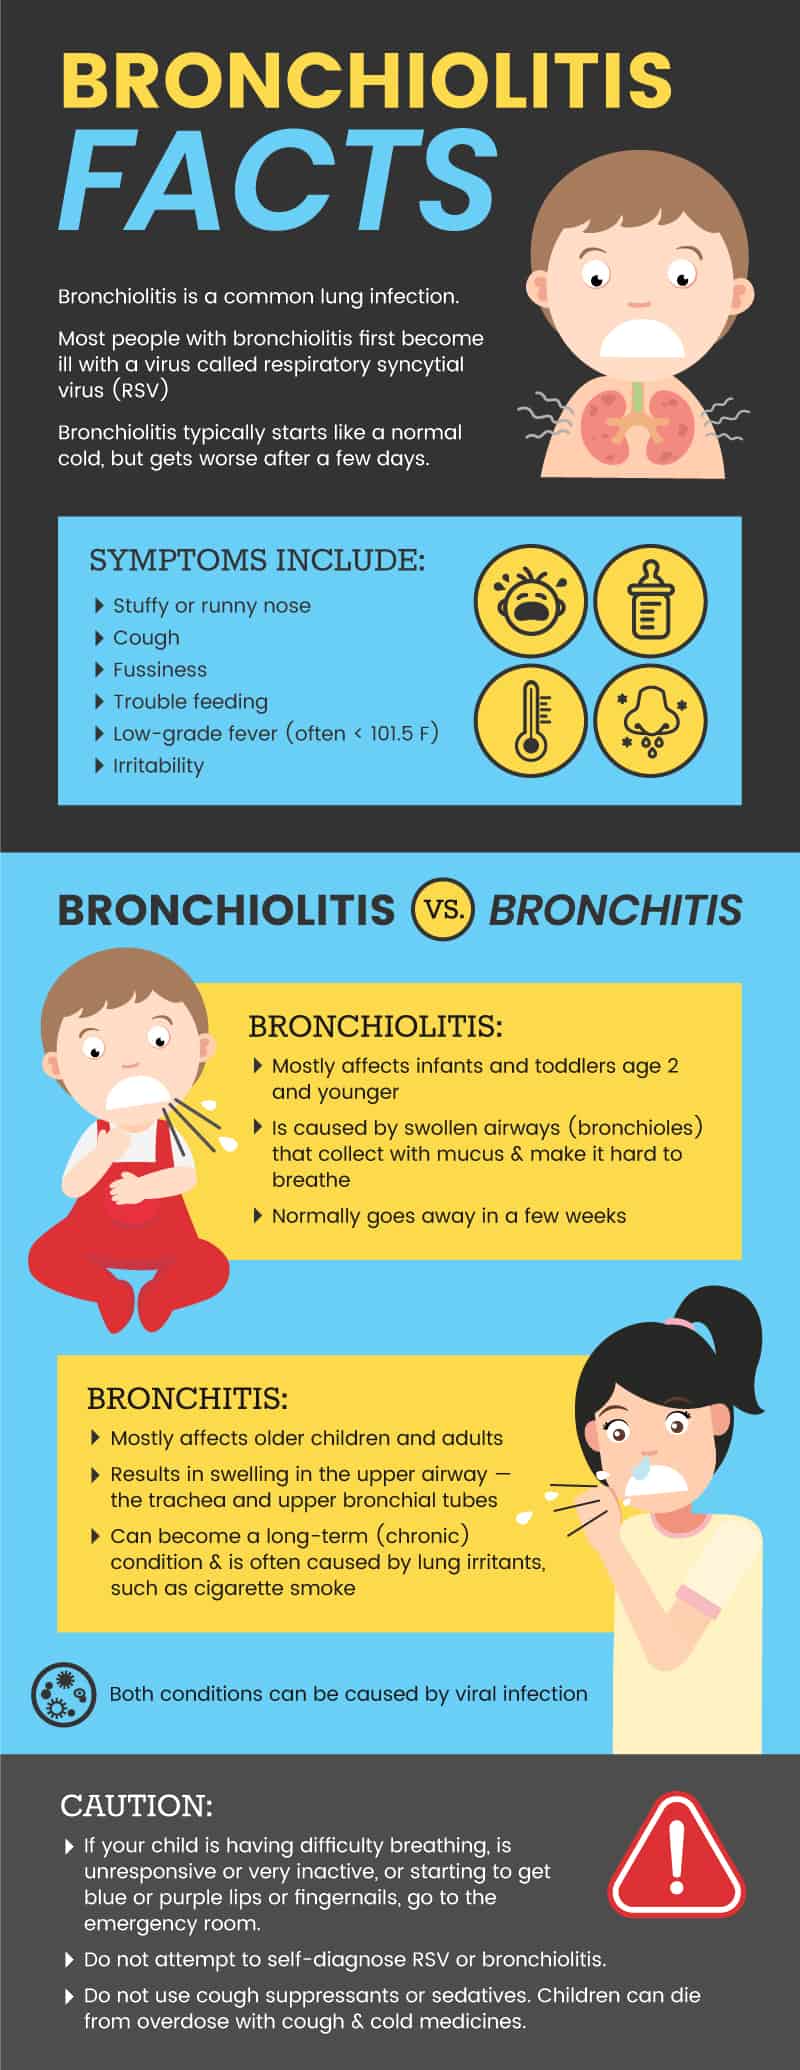 Bronchiolitis facts - Dr. Axe